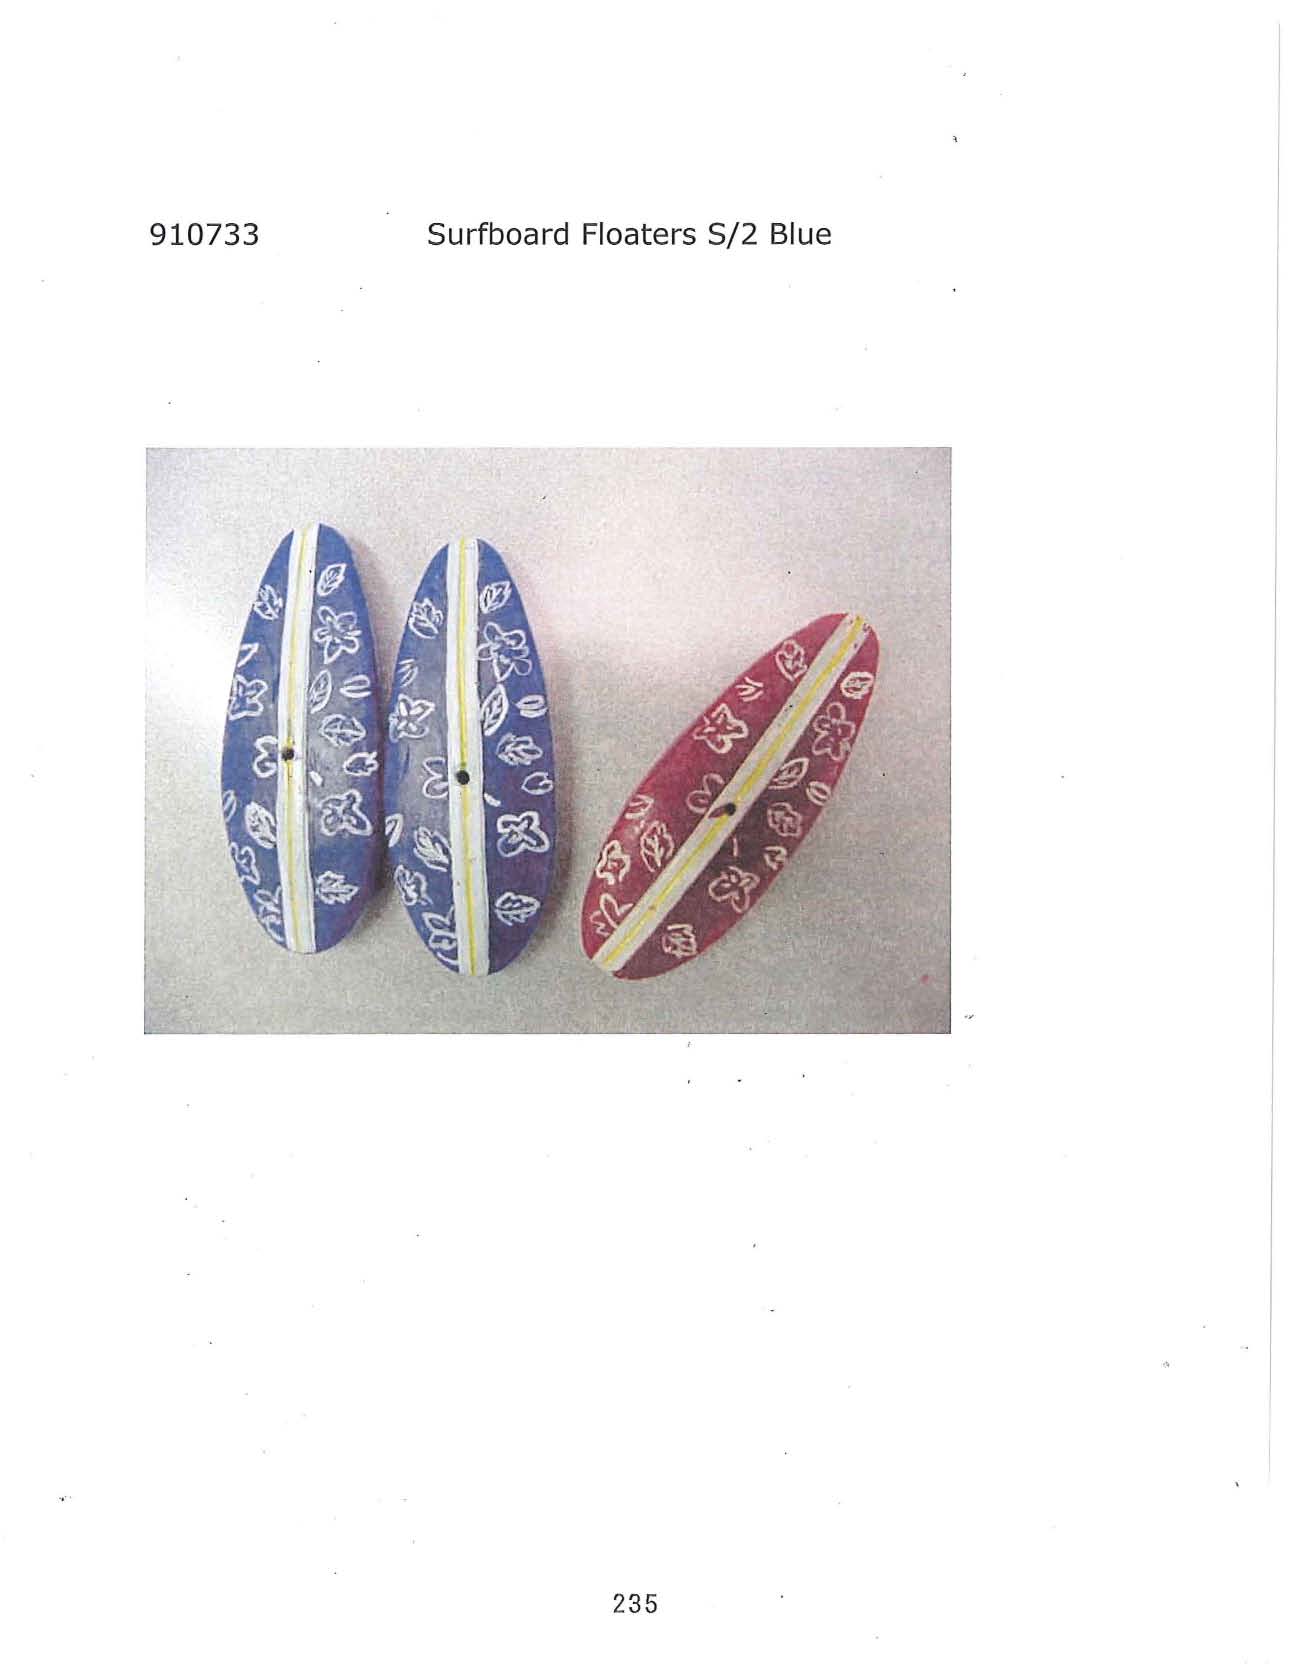 Surfboard Floaters s/2 - Blue